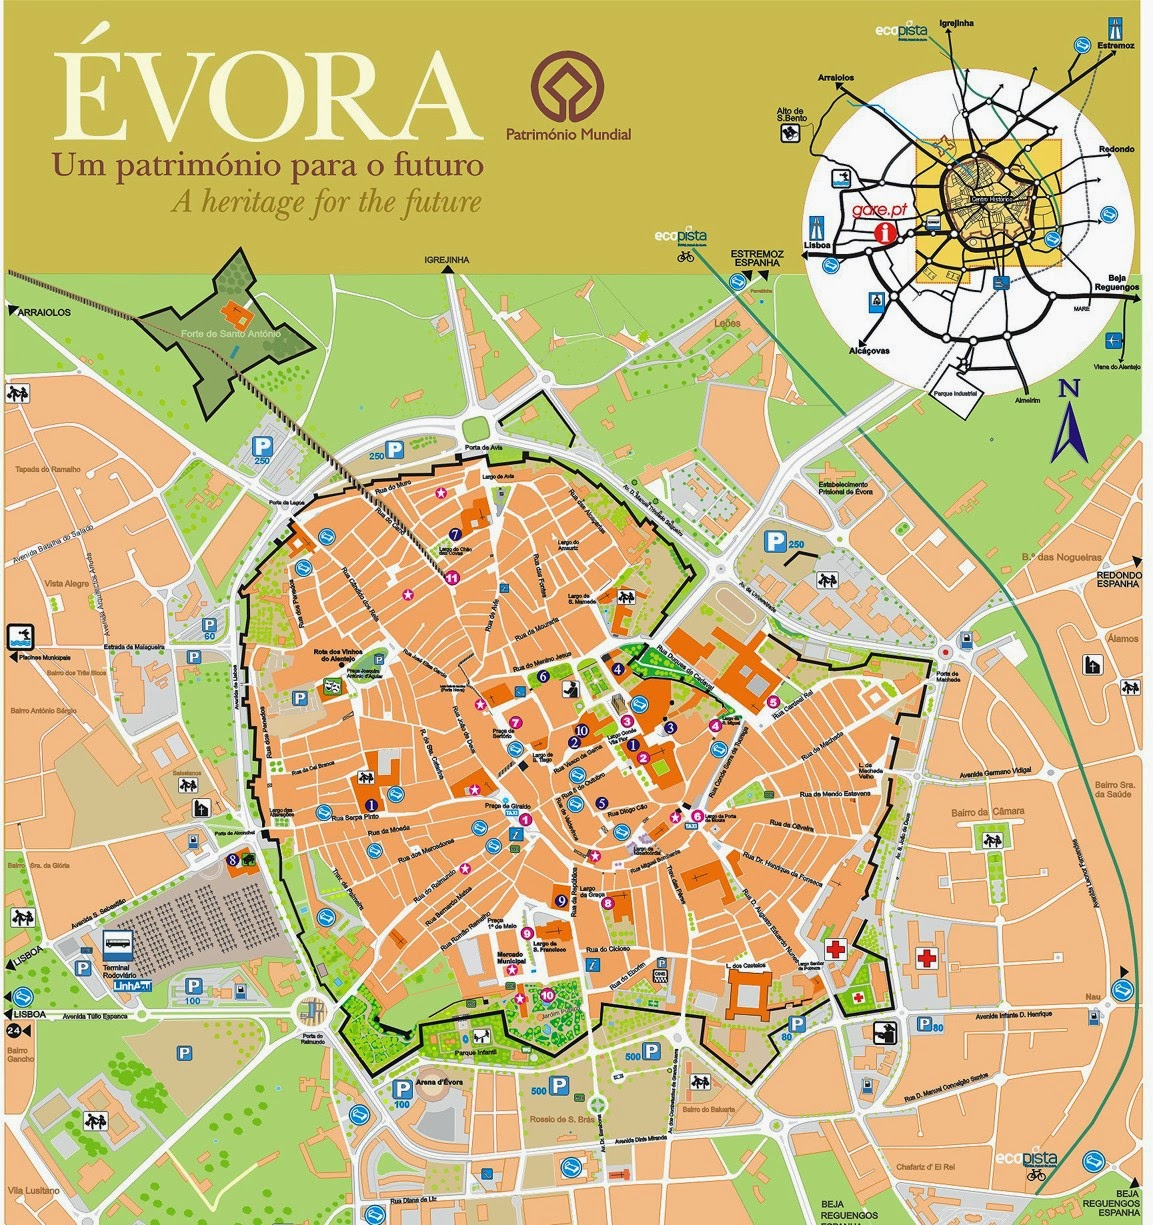 Evora city map